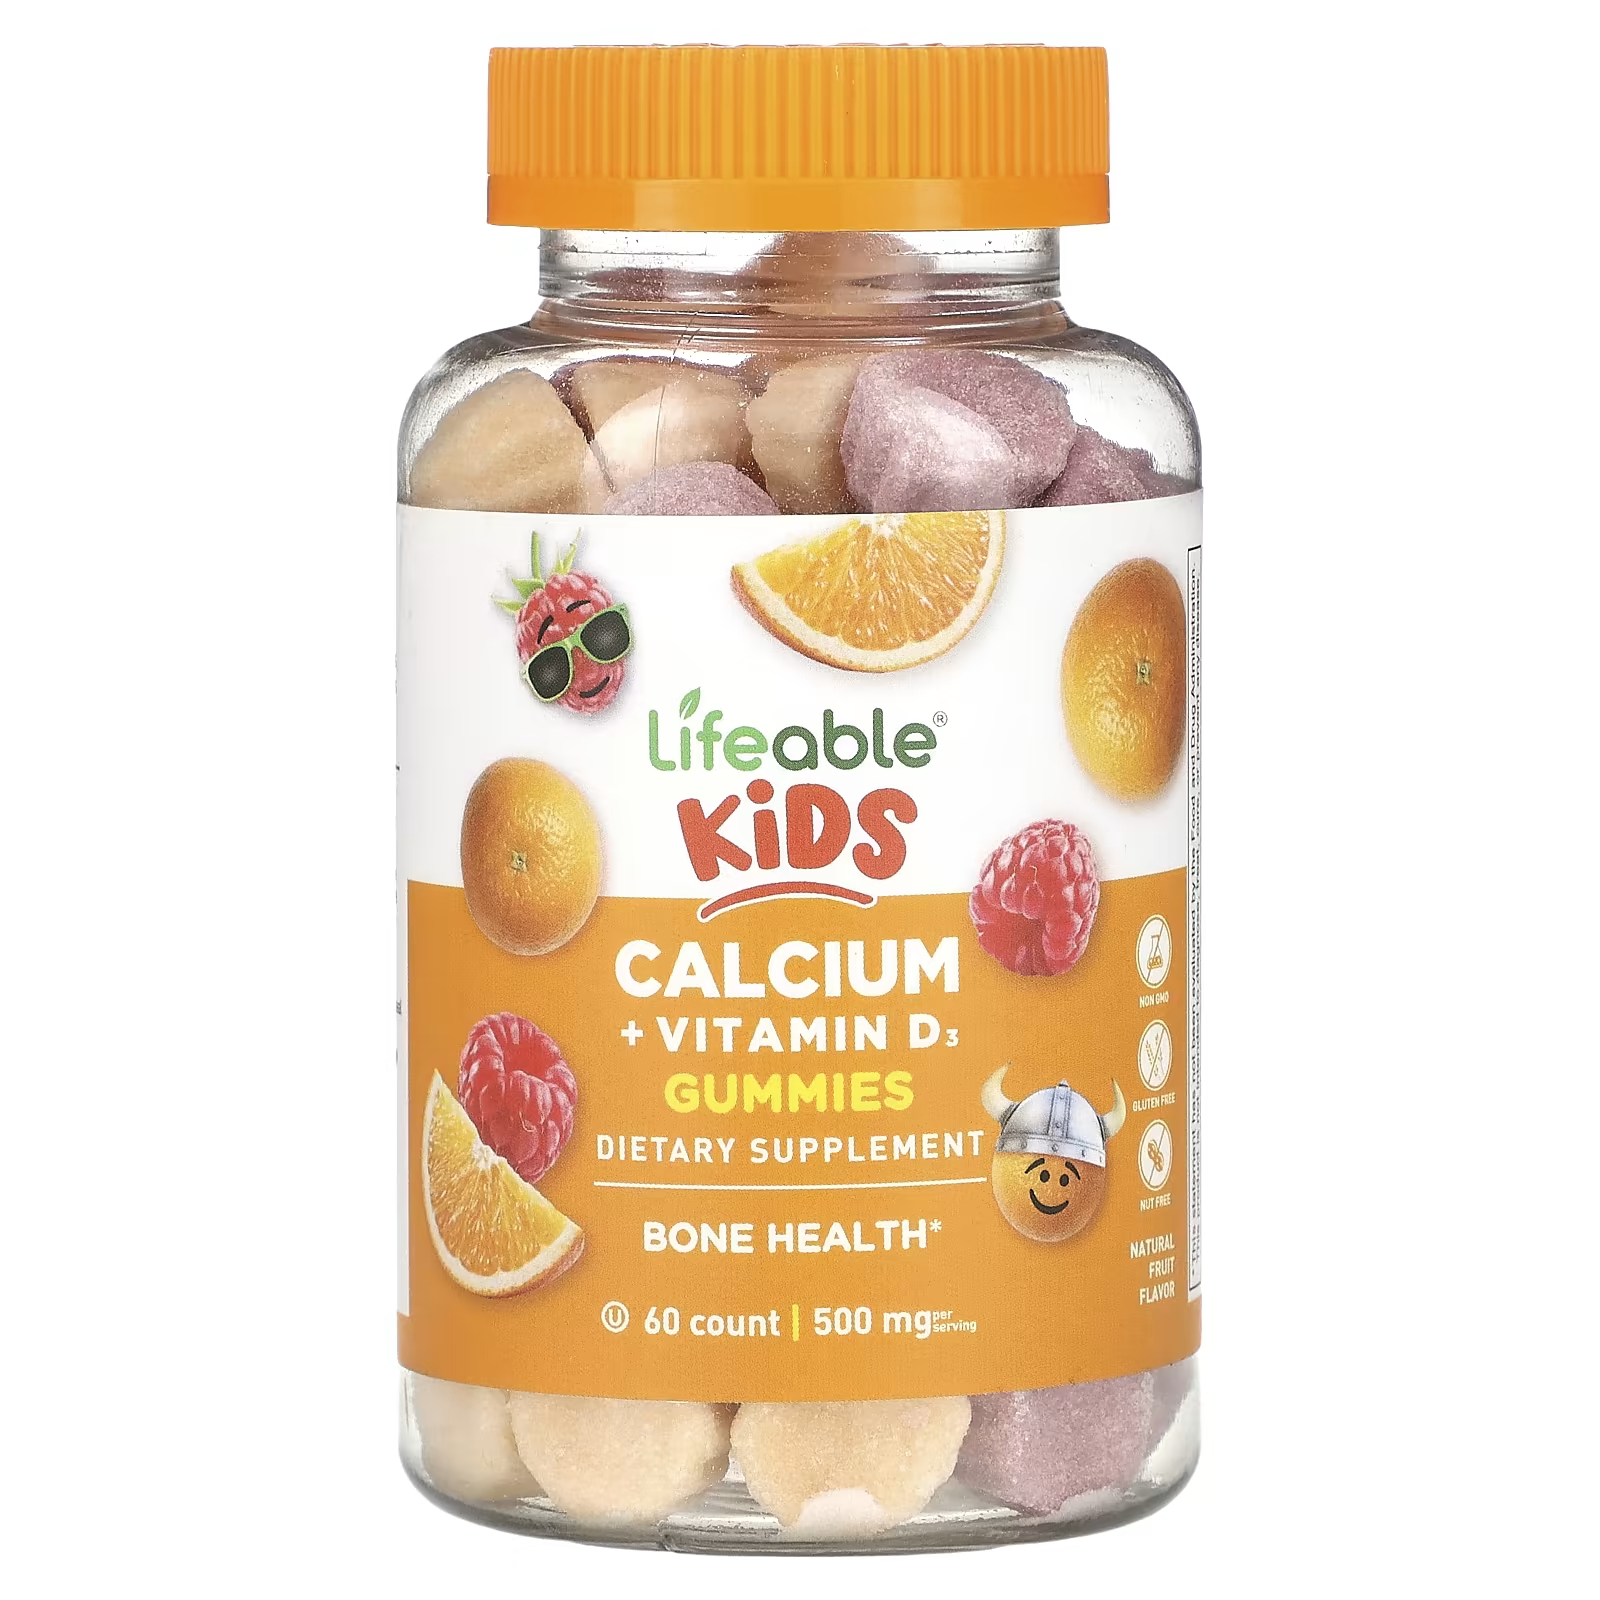 Пищевая добавка Lifeable Kids с кальцием и витамином D3, натуральные фрукты, 60 жевательных конфет пищевая добавка carlson kid s с витамином d3 60 жевательных конфет